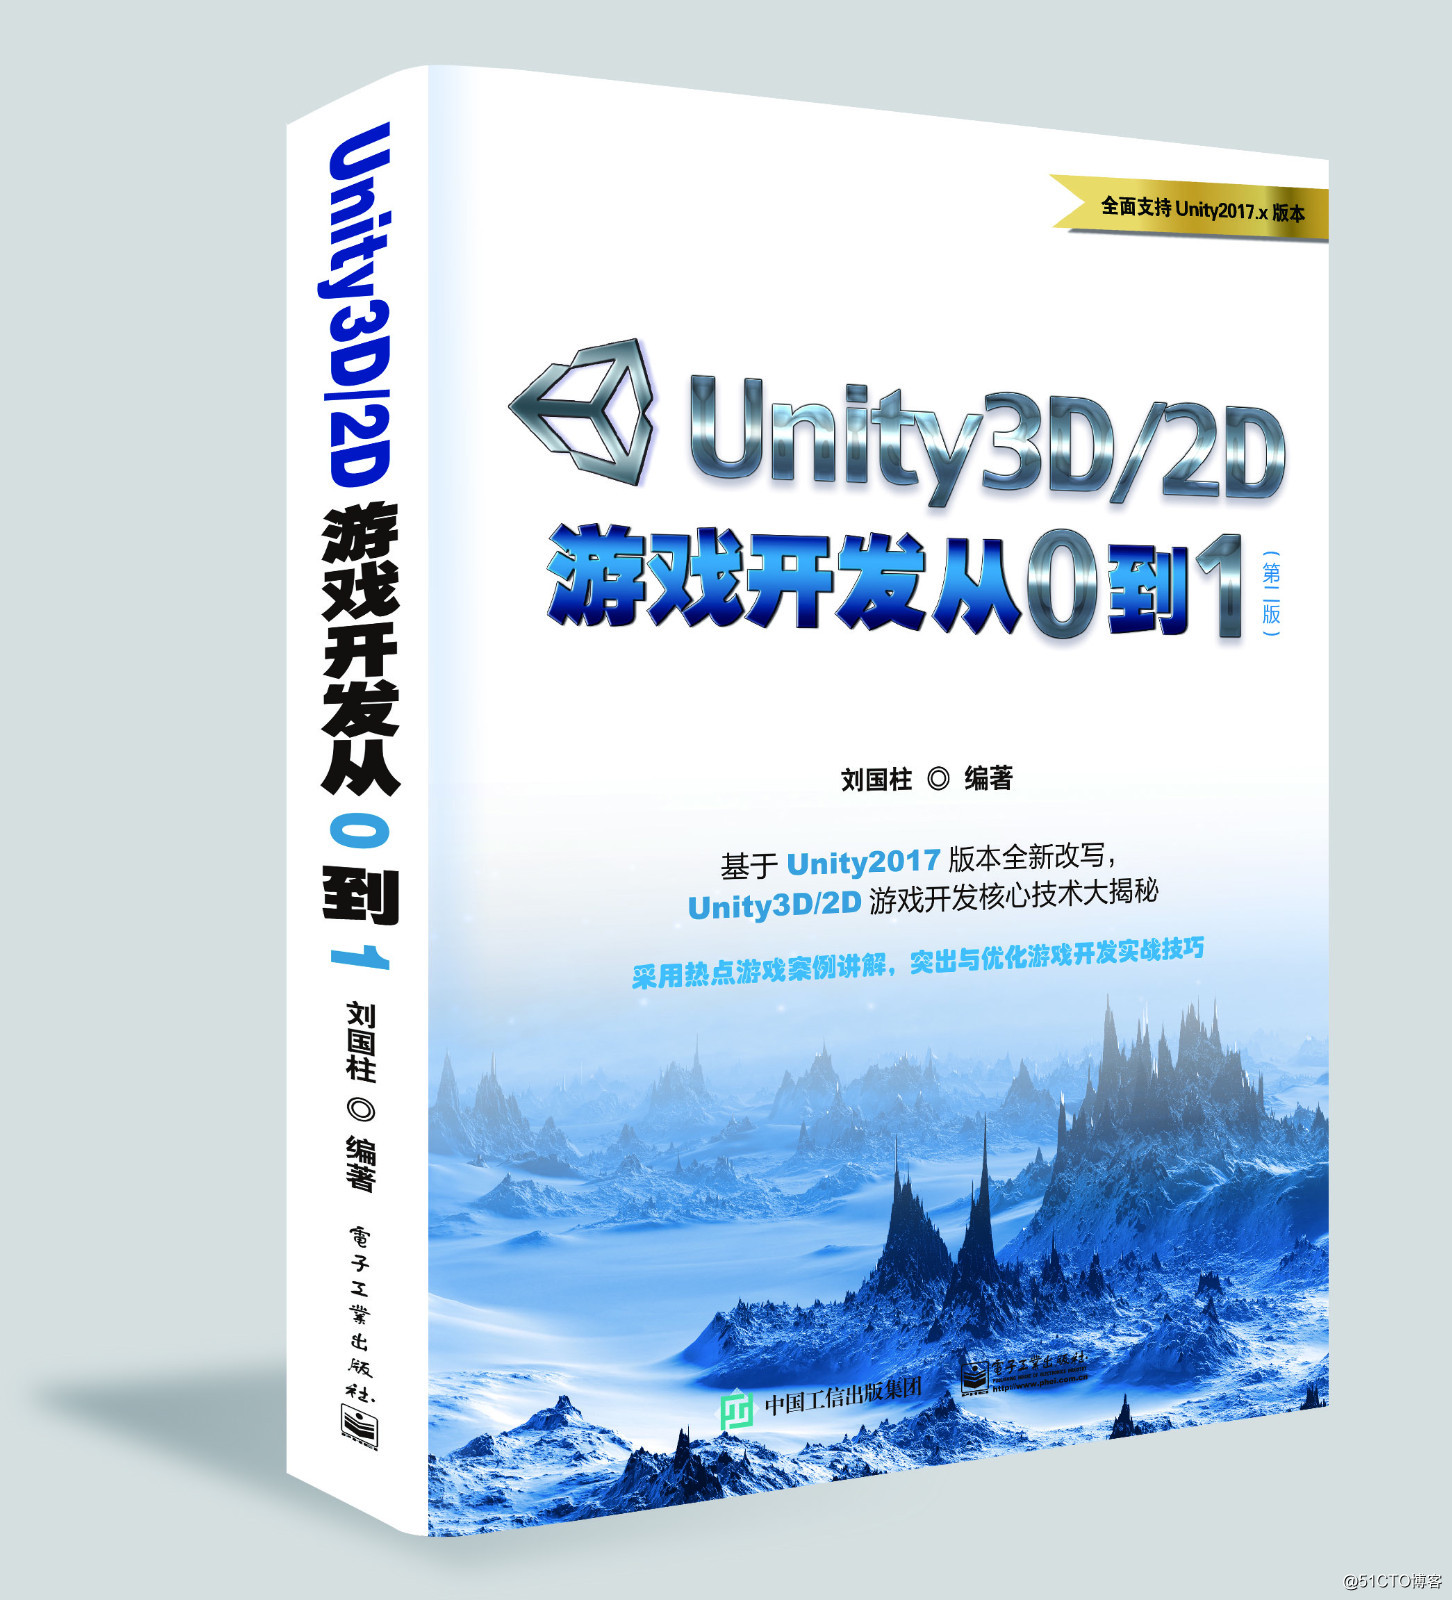 刘国柱- Unity游戏开发深度学习 系列课程福利大放送